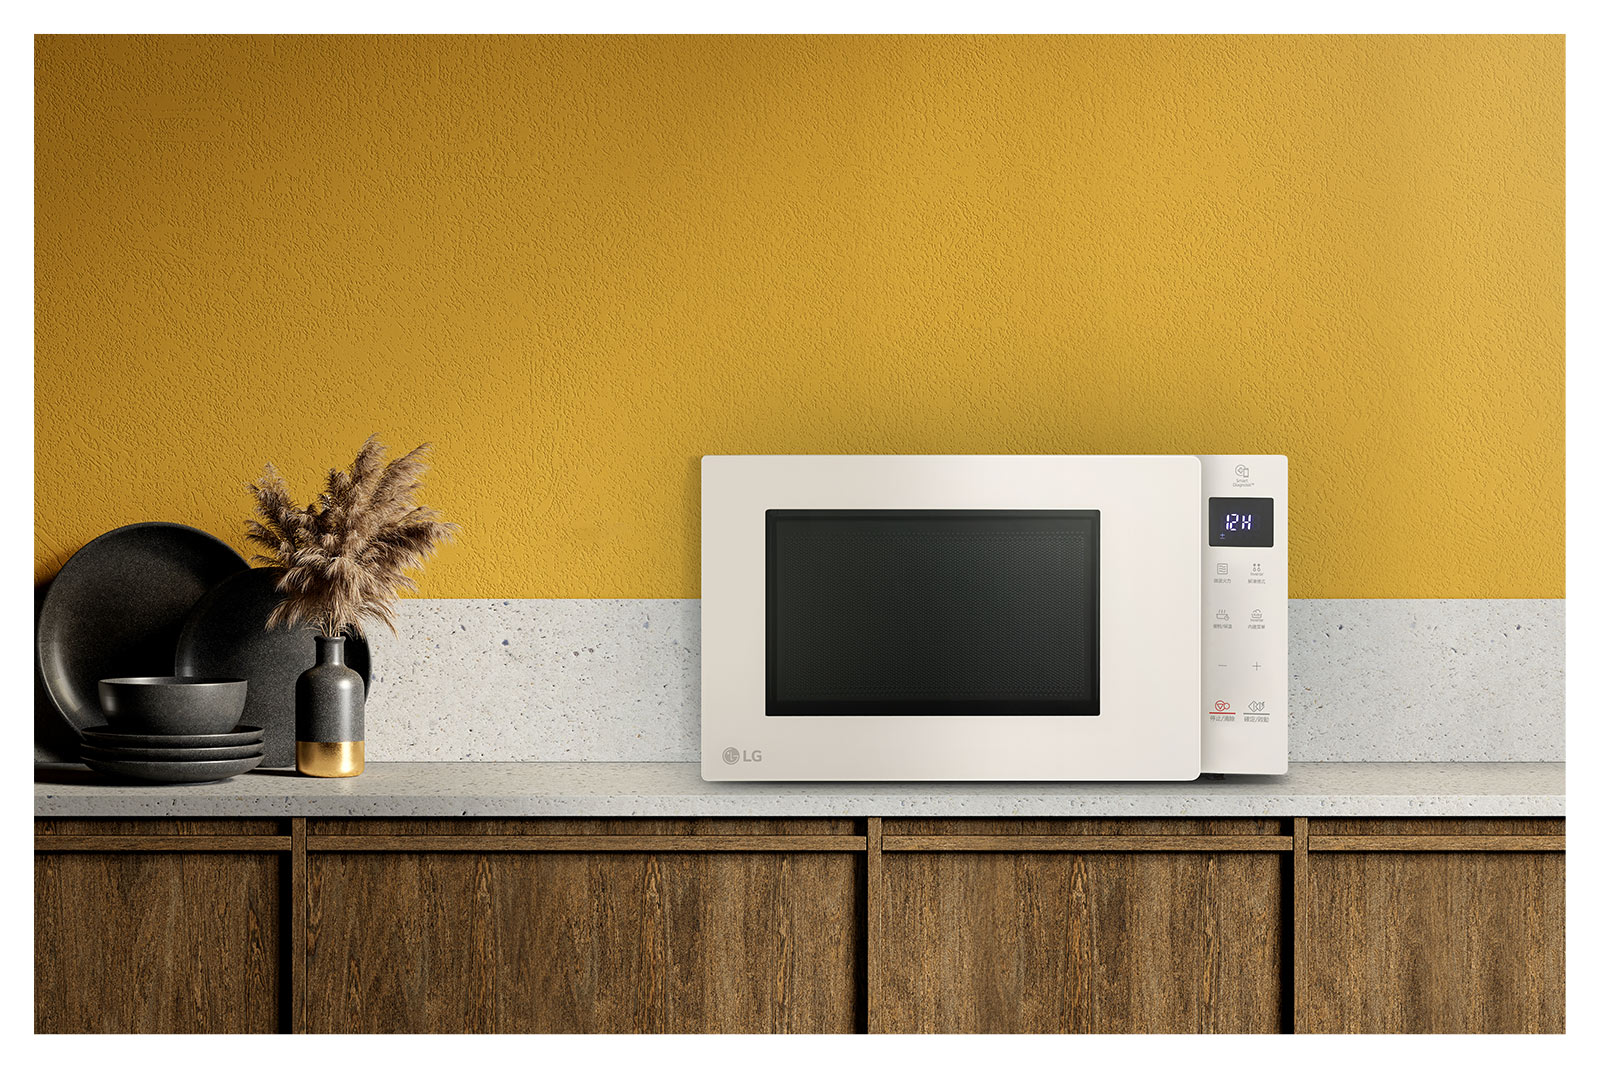 該產品為 LG Objet Collection NeoChef 水晶米色。米色產品在各種概念和顏色上與廚房背景非常相襯。